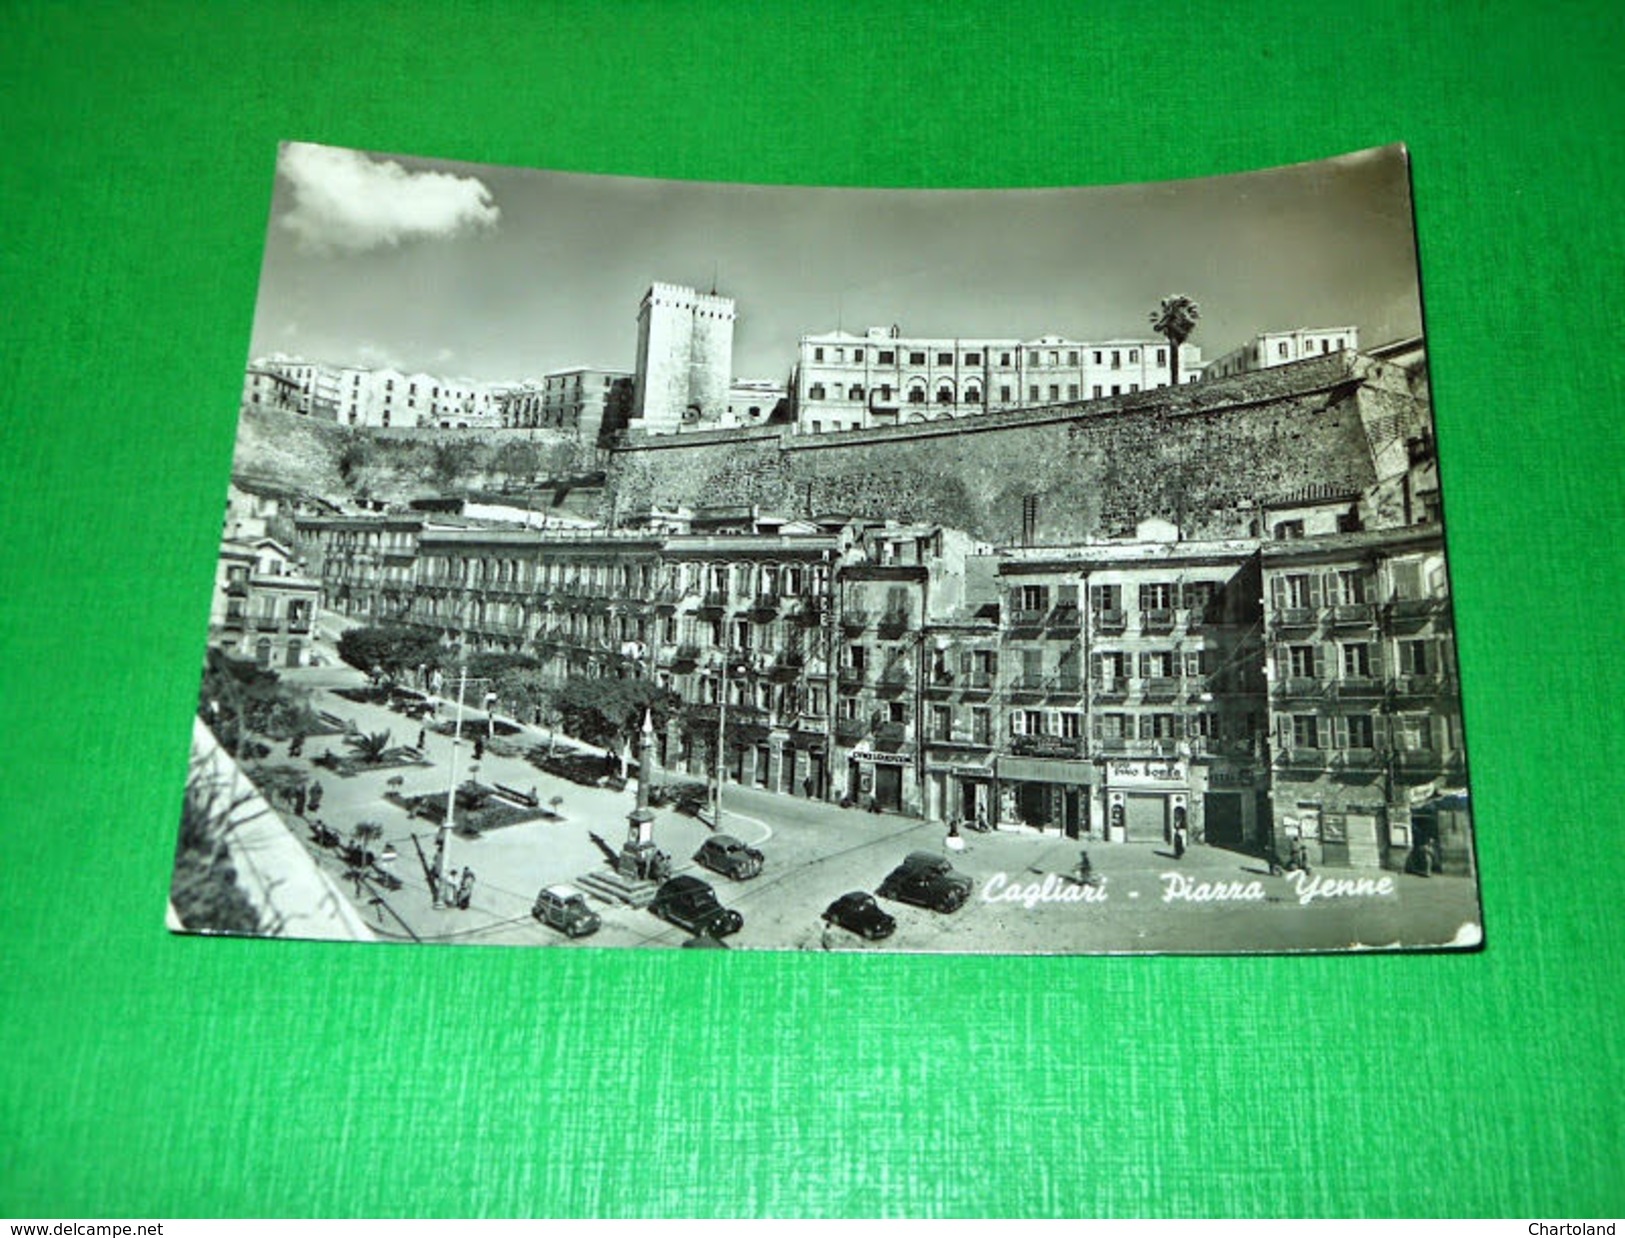 Cartolina Cagliari - Piazza Yenne 1953. - Cagliari